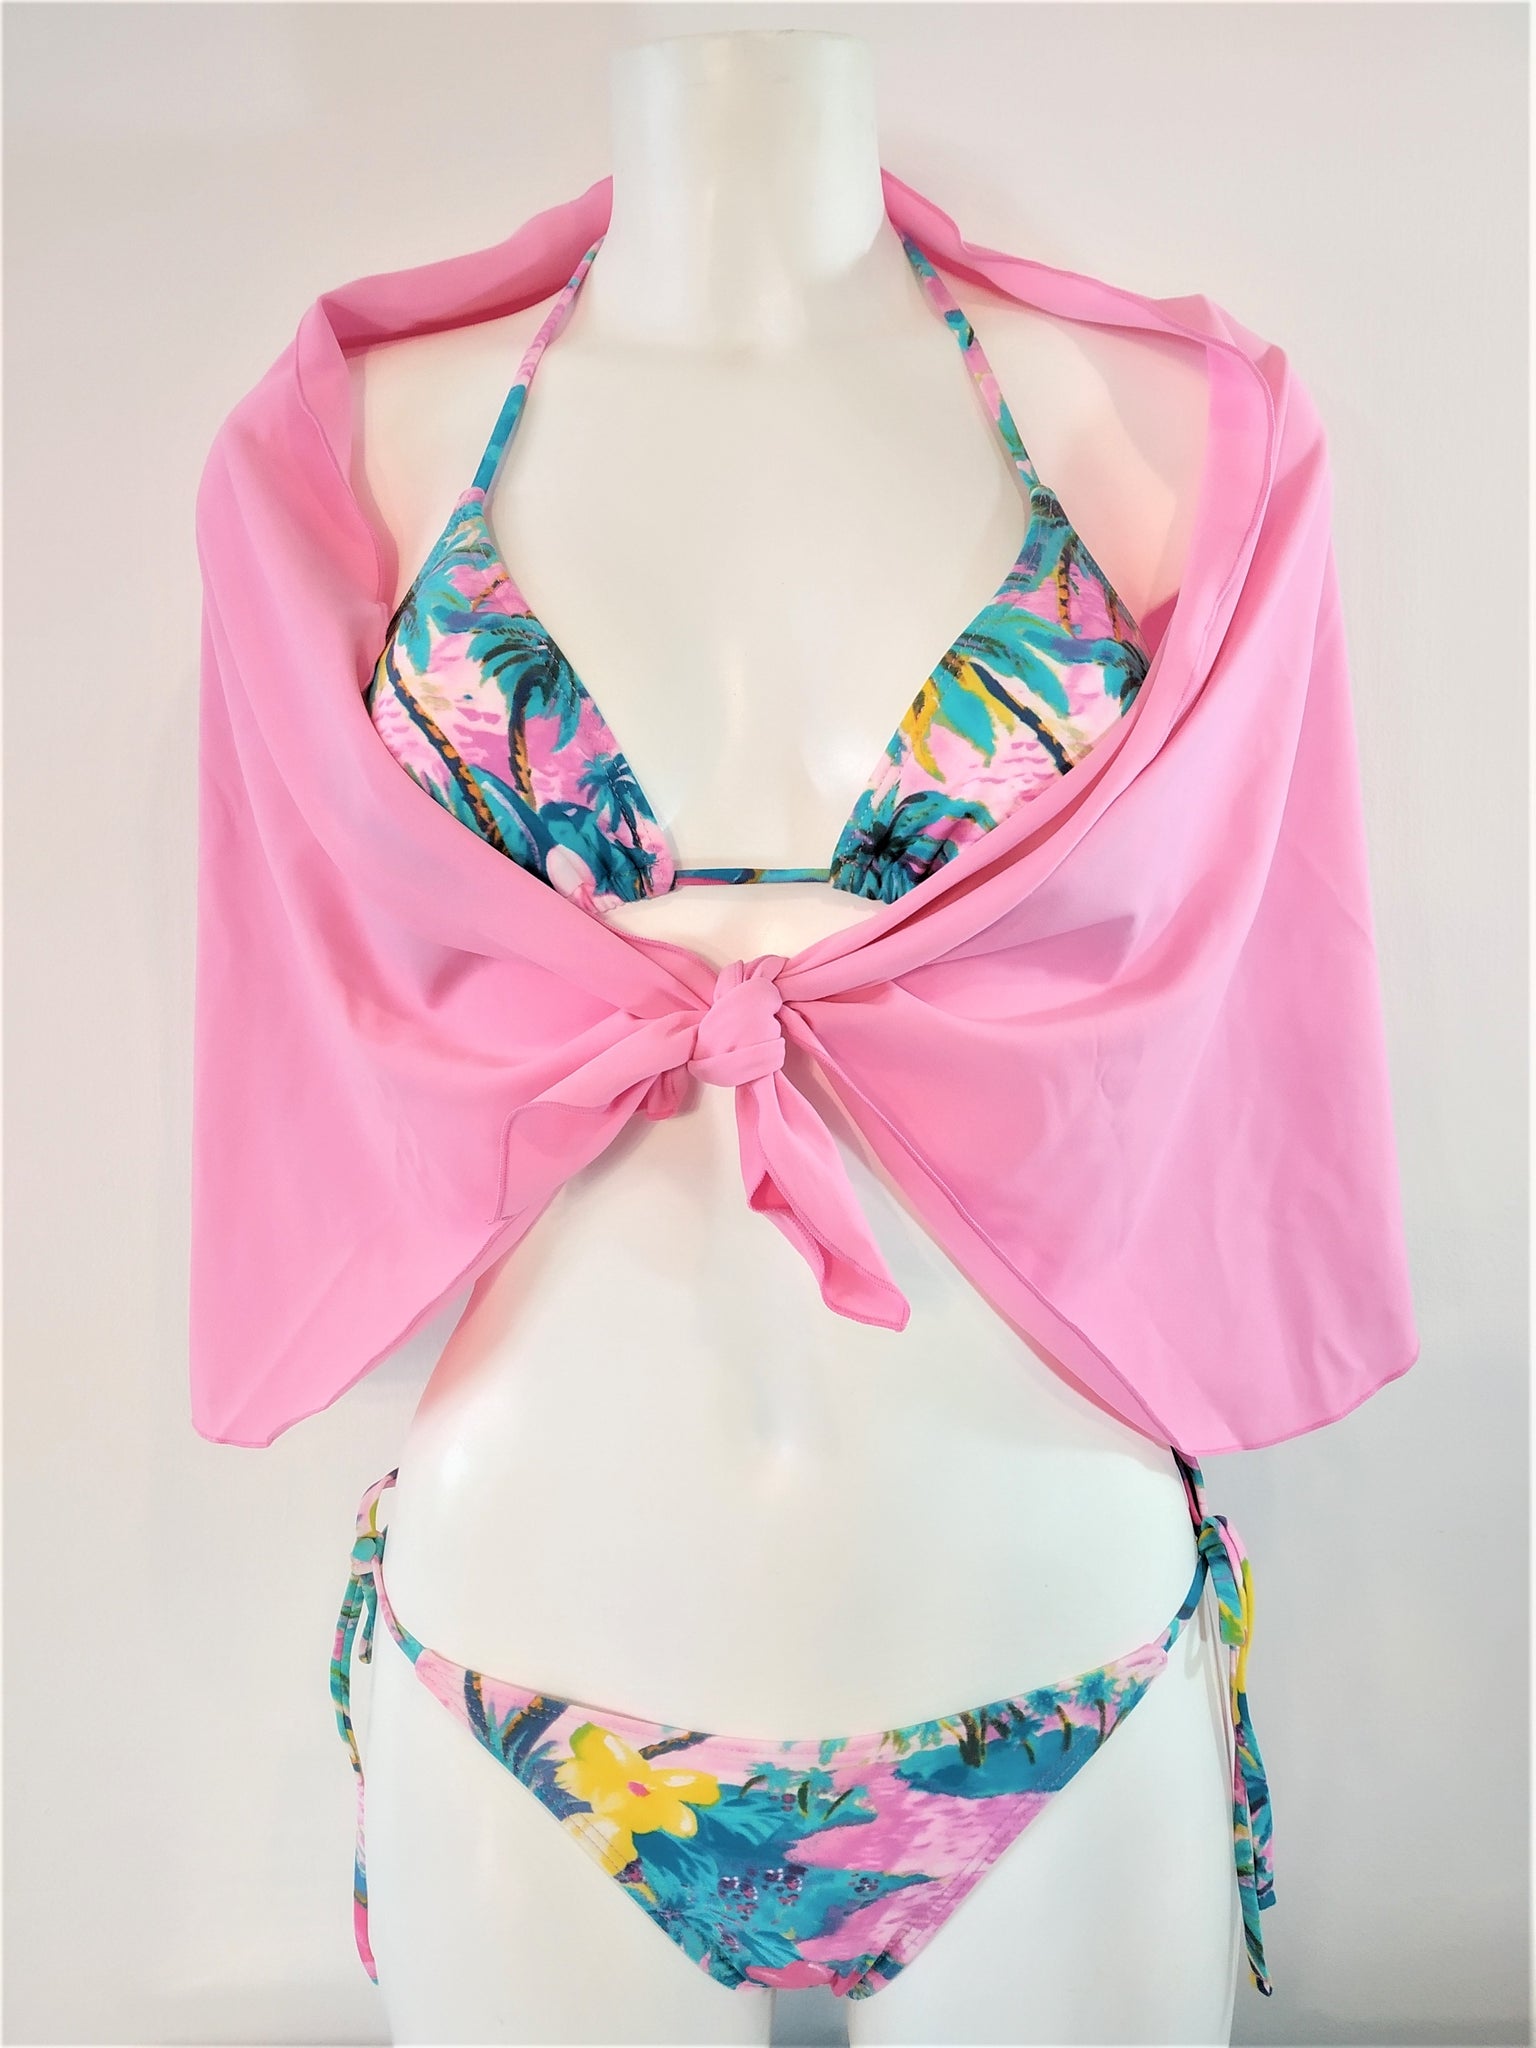 bikinn-triangular bikini bra triangle top swimsuit,maillot de bain triangle,traje de baño triangular, pink pareo lycra